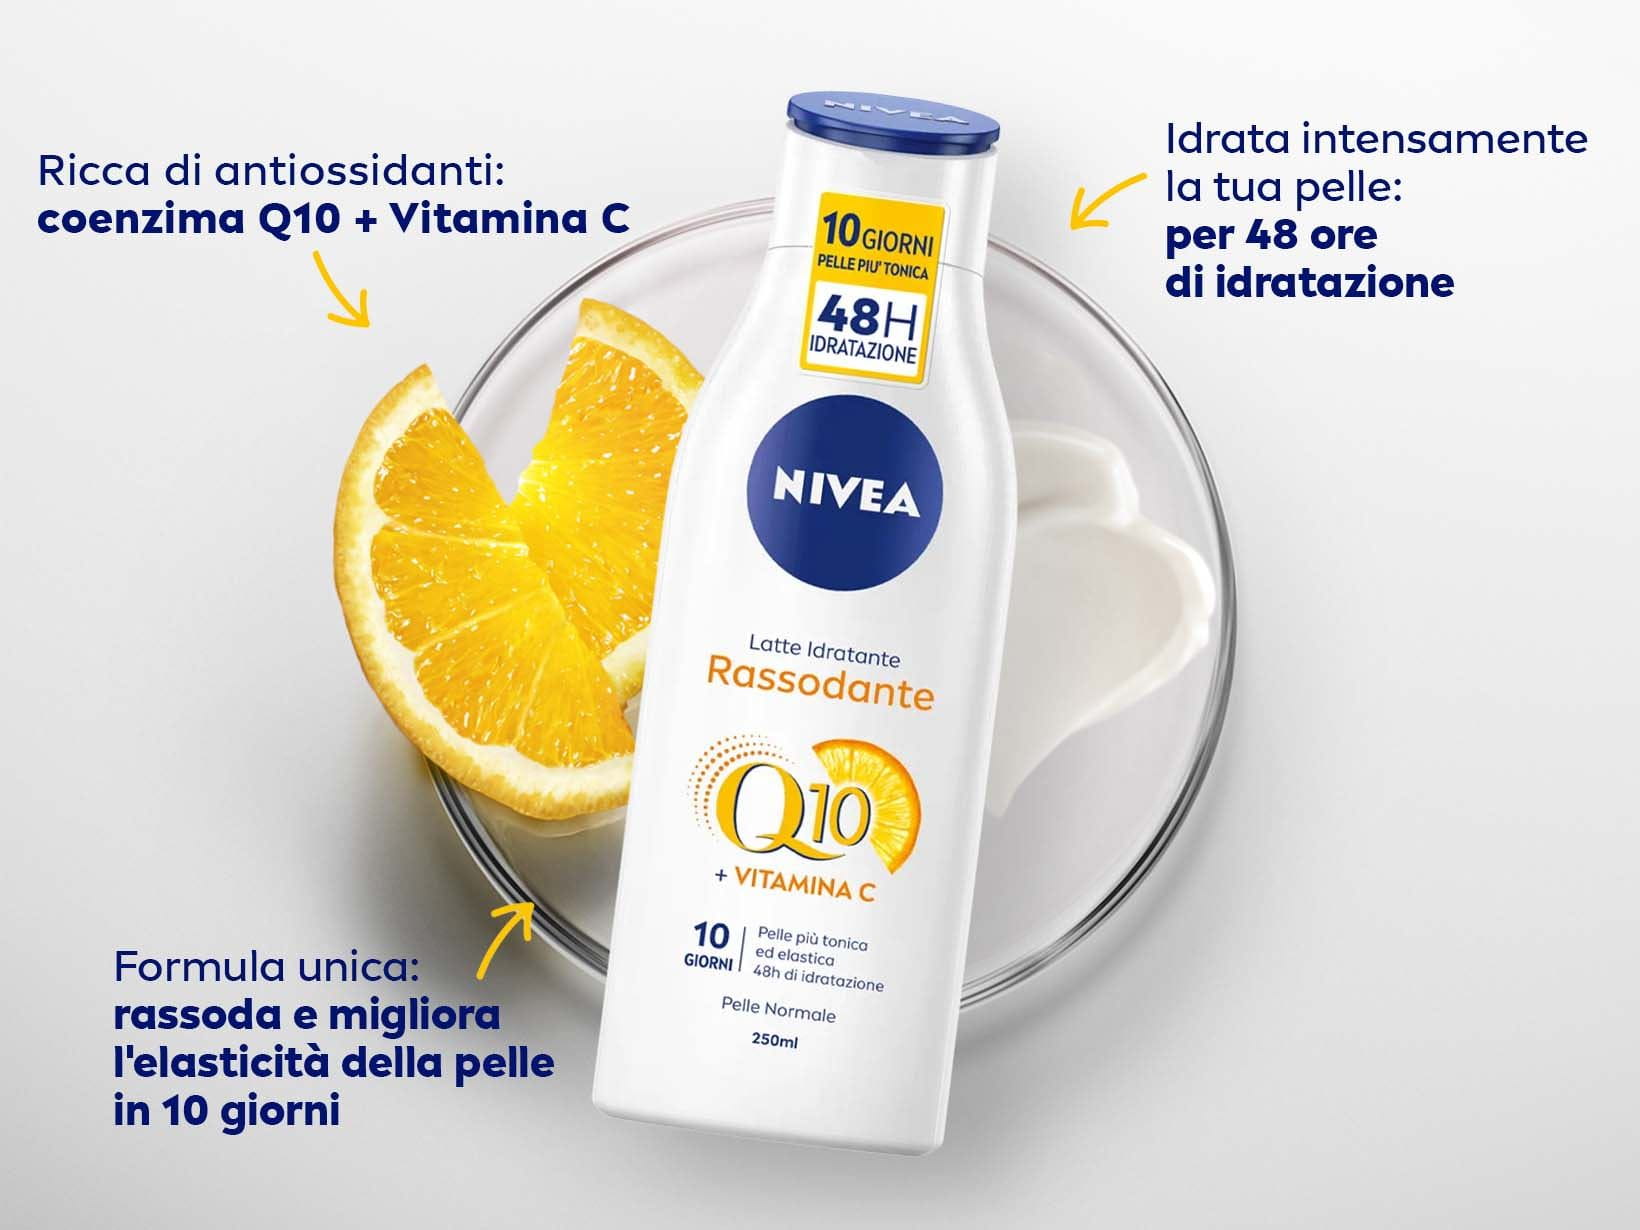 Ricca di antiossidanti: coenzima Q10 + Vitamina C